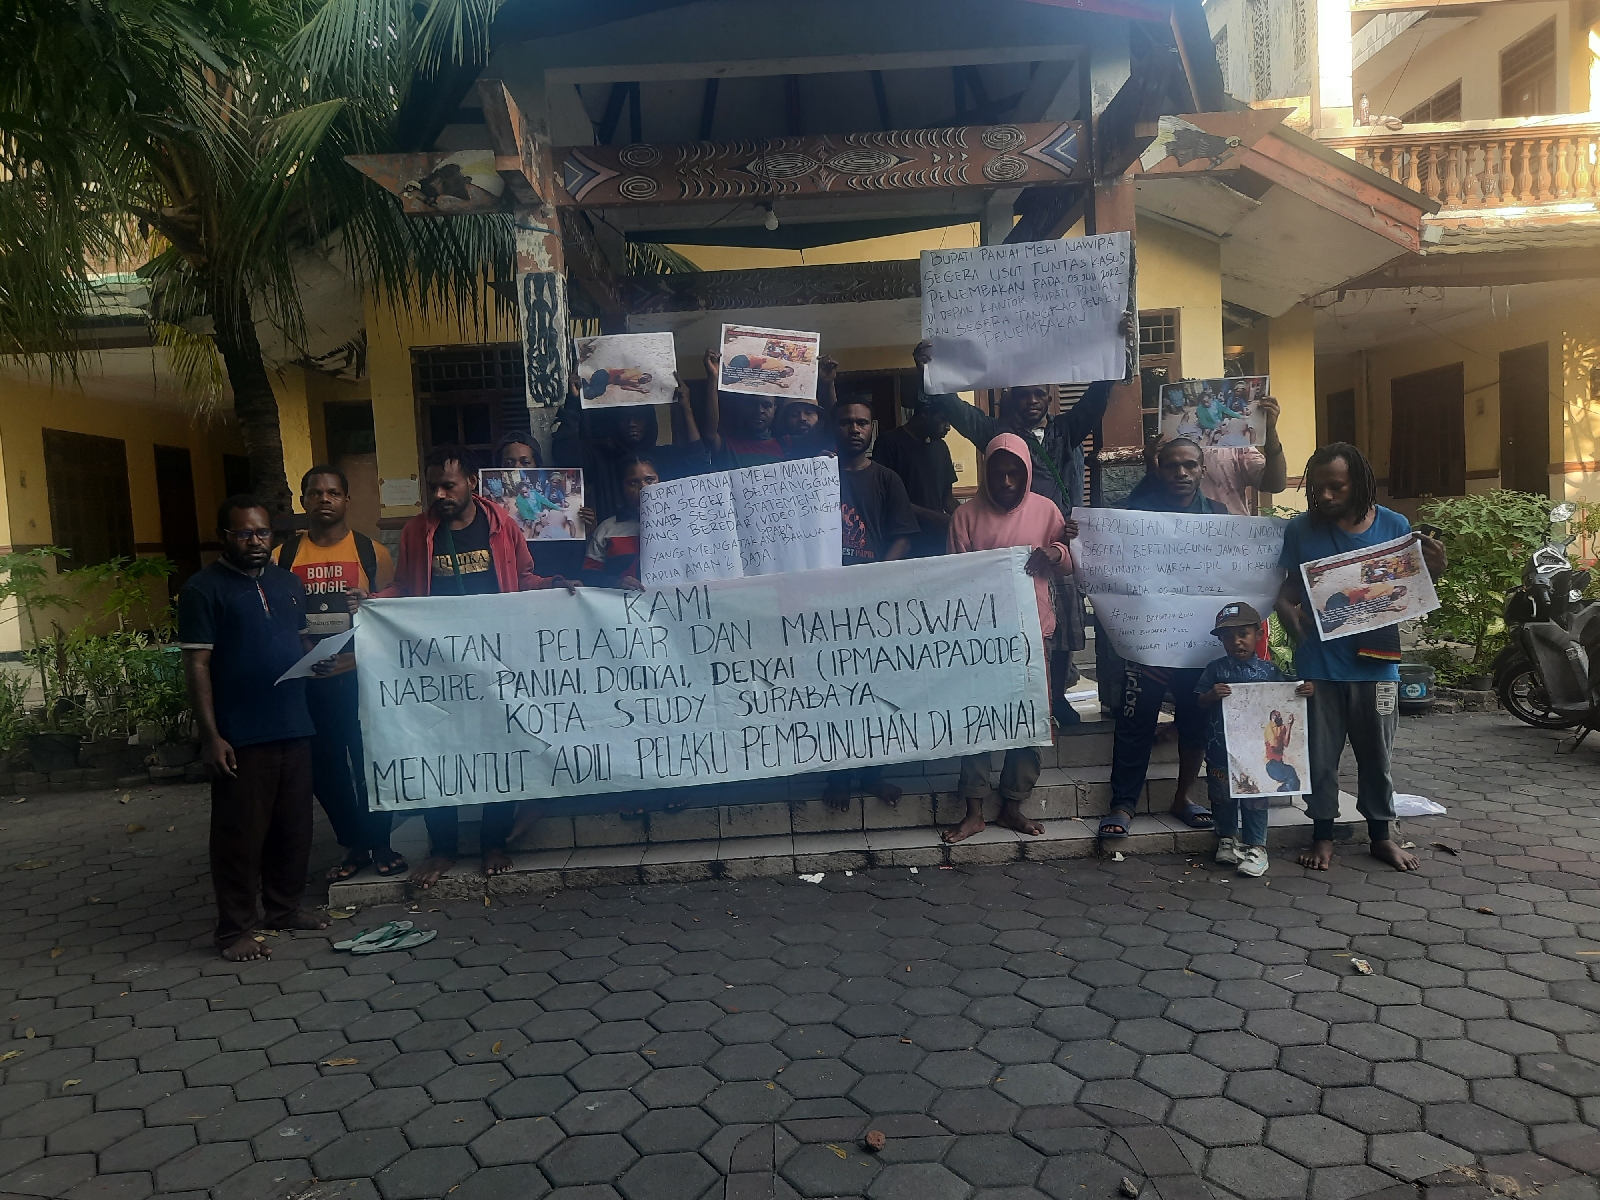 IPMANAPADODE Kota Studi Surabaya Menyikapi Kasus Penembakan Di Paniai Papua